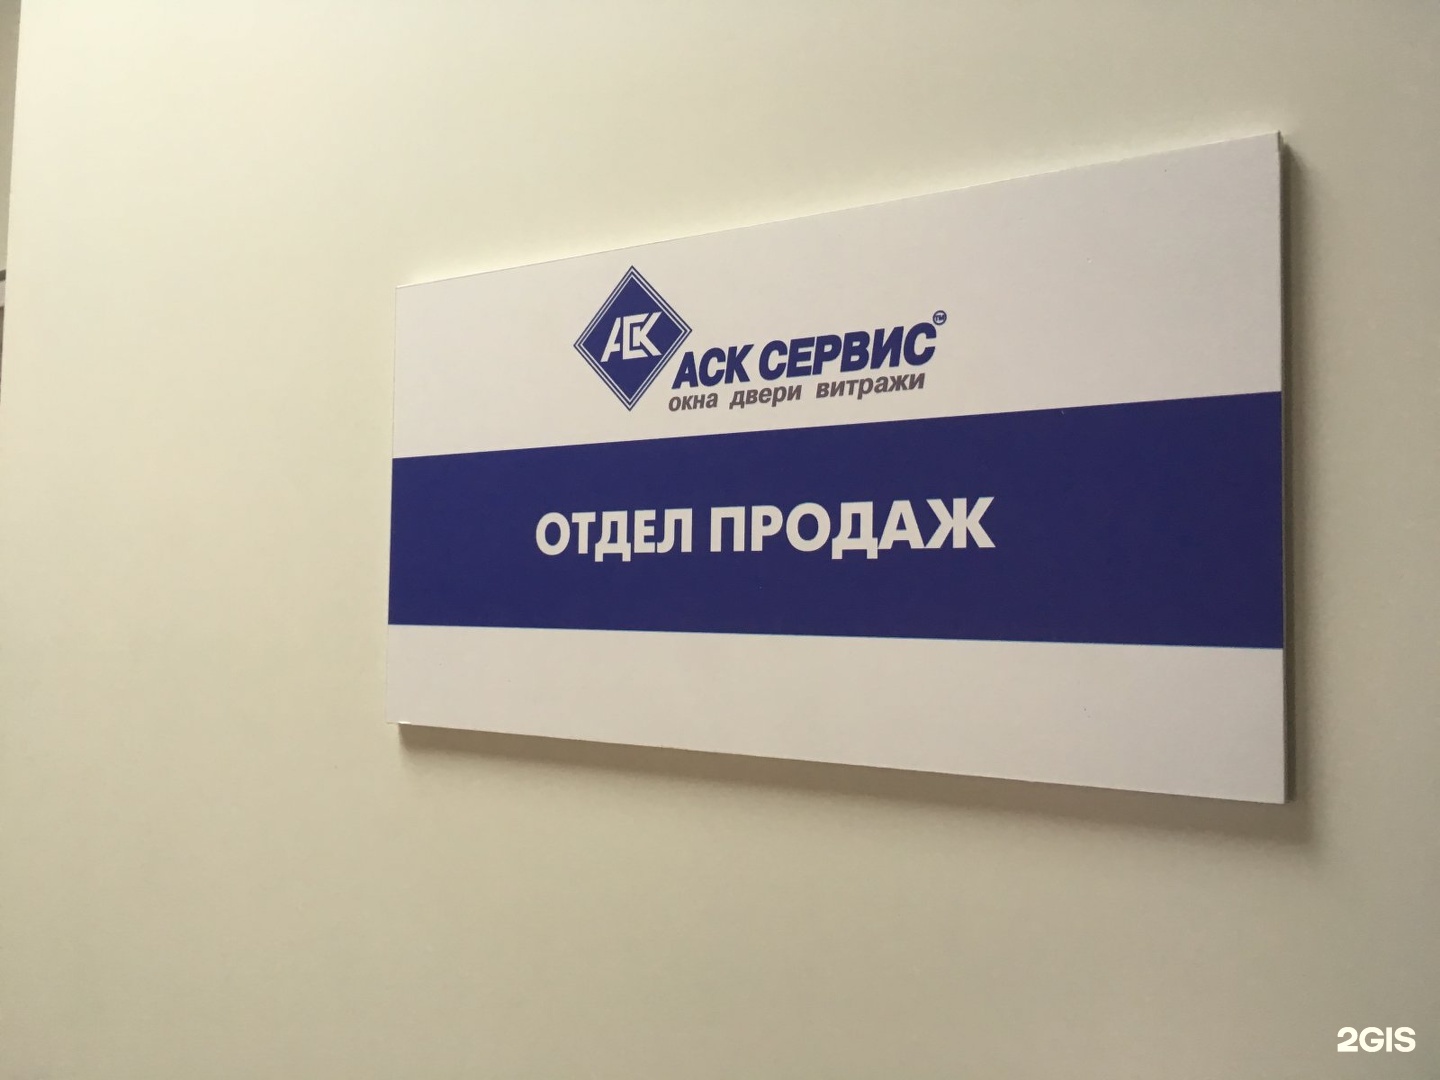 АСК сервис. АСК сервис Новосибирск. АСК сервис кондиционеры. Логотип фото АСК. Аск новосибирск